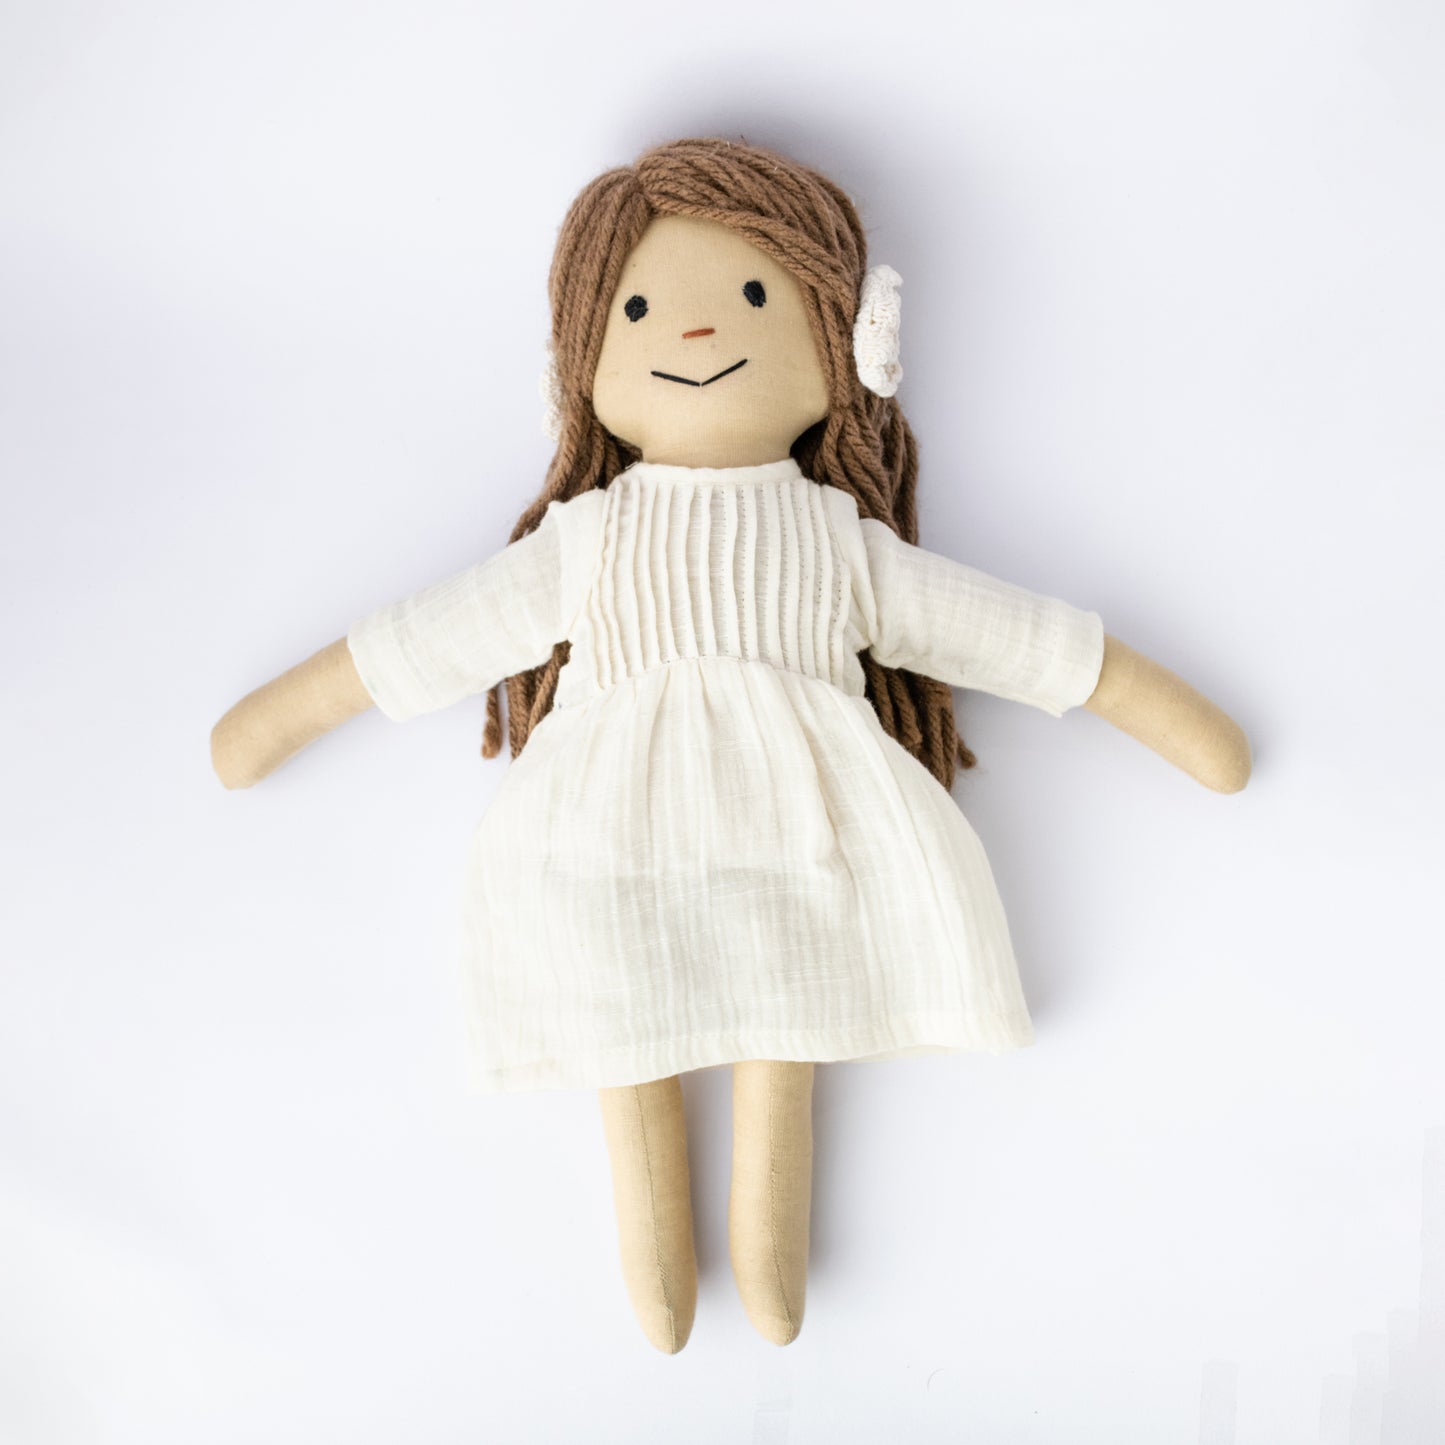 SKYLAR - The Doll With Brown Yarn